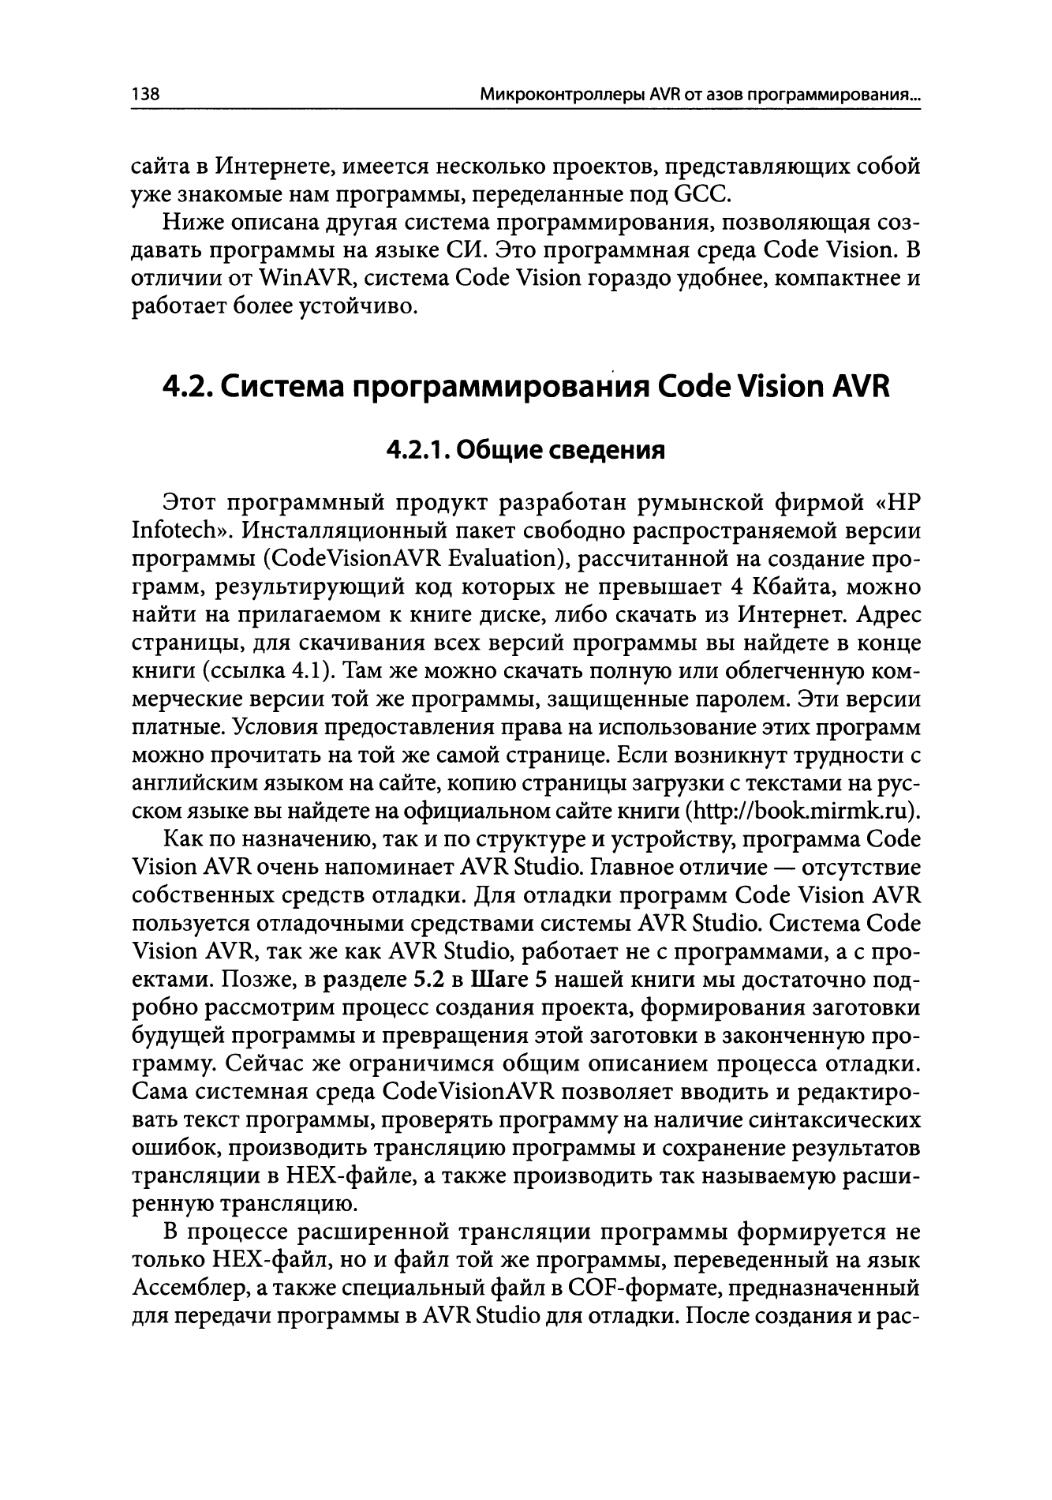 4.2.Система программирования Code Vision AVR
4.2.1.Общие сведения